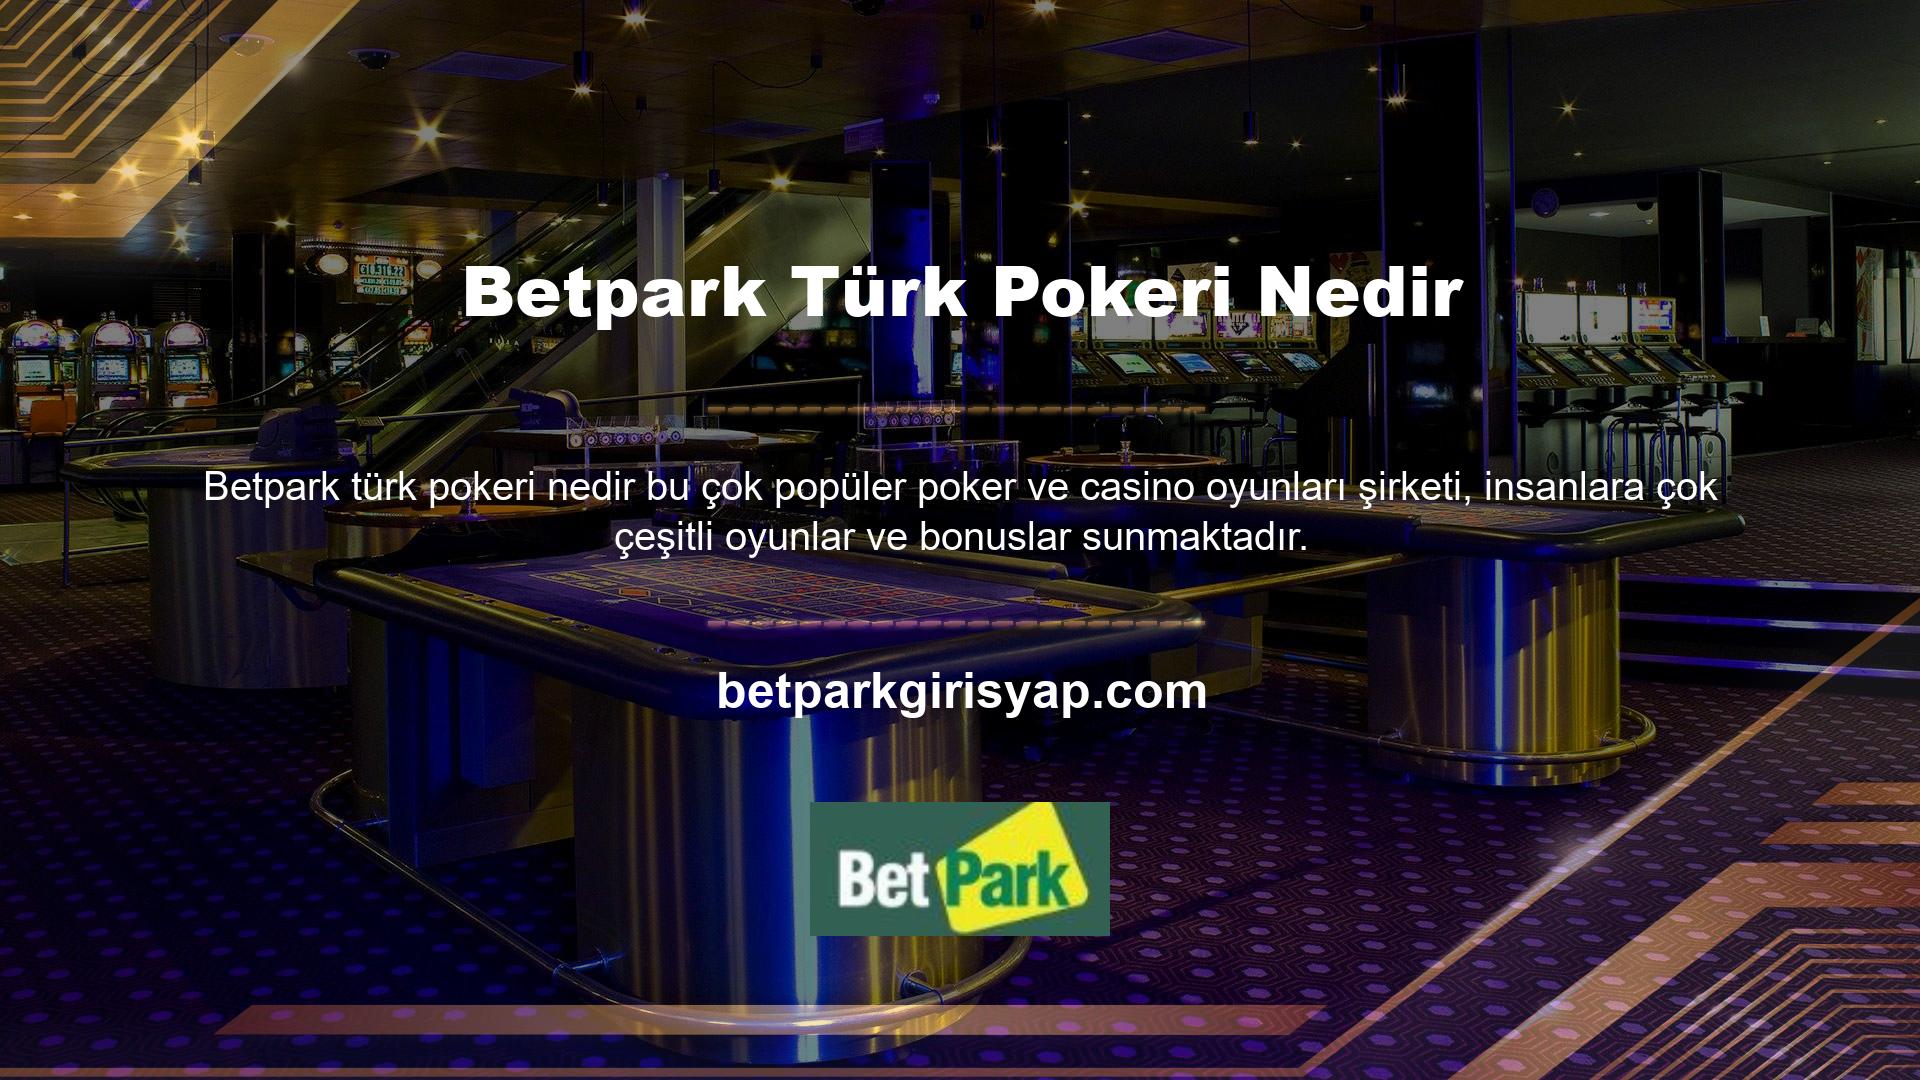 Sadece pek çok kişi tarafından sevilmekle kalmıyorlar, aynı zamanda Türk pokeri hakkında çok şey bildiklerini de iddia ediyorlar